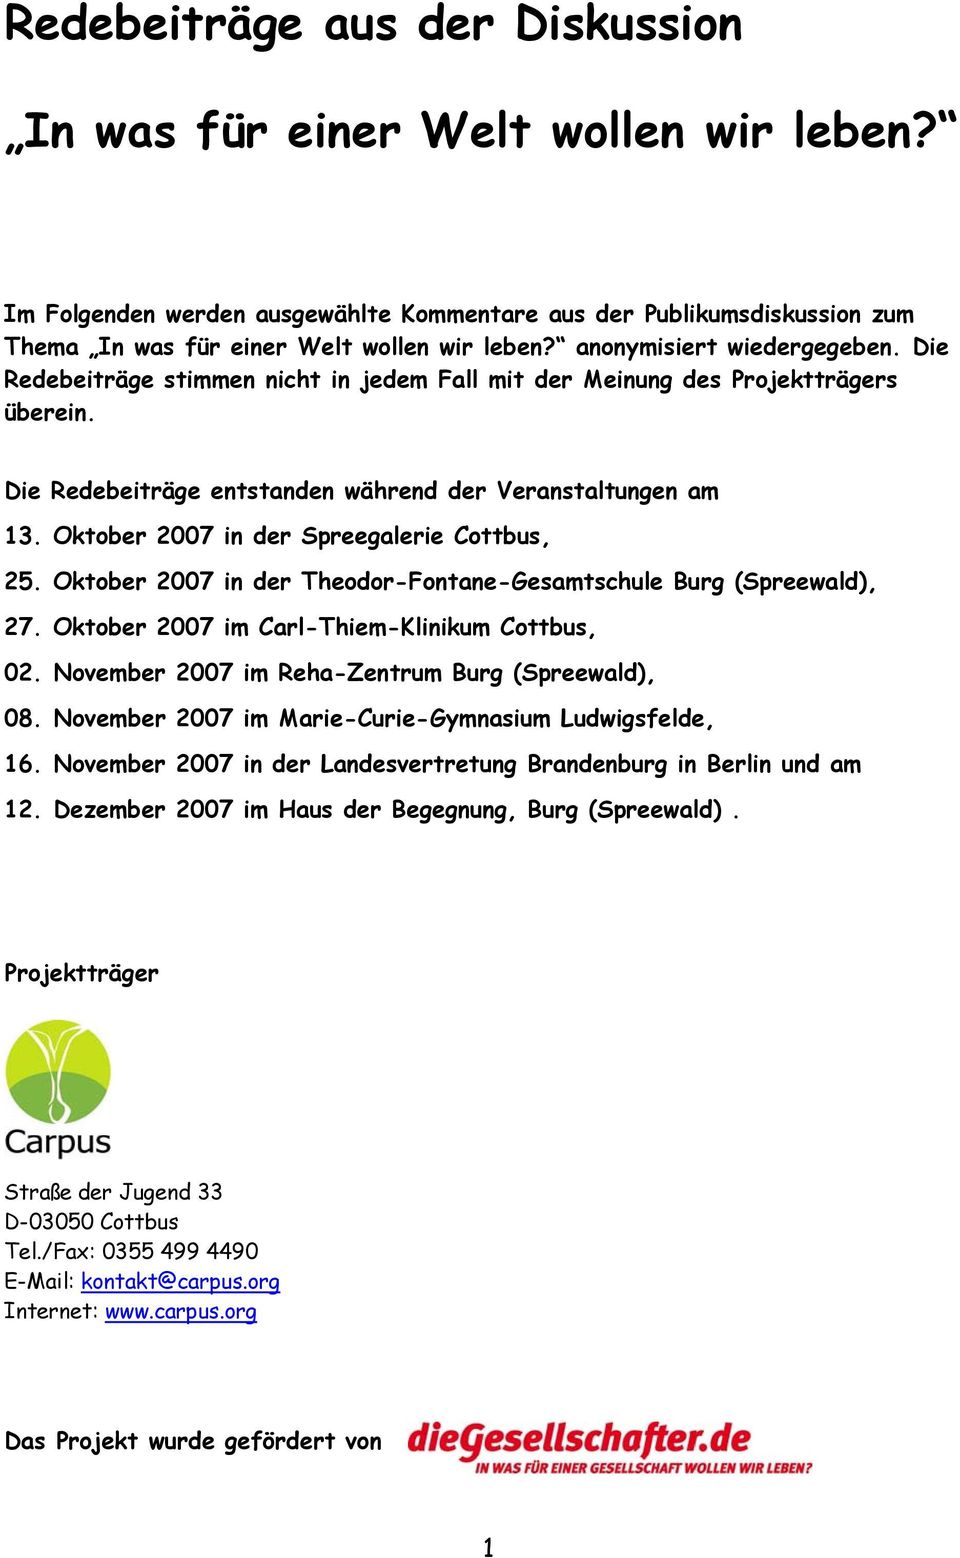 Oktober 2007 in der Spreegalerie Cottbus, 25. Oktober 2007 in der Theodor-Fontane-Gesamtschule Burg (Spreewald), 27. Oktober 2007 im Carl-Thiem-Klinikum Cottbus, 02.